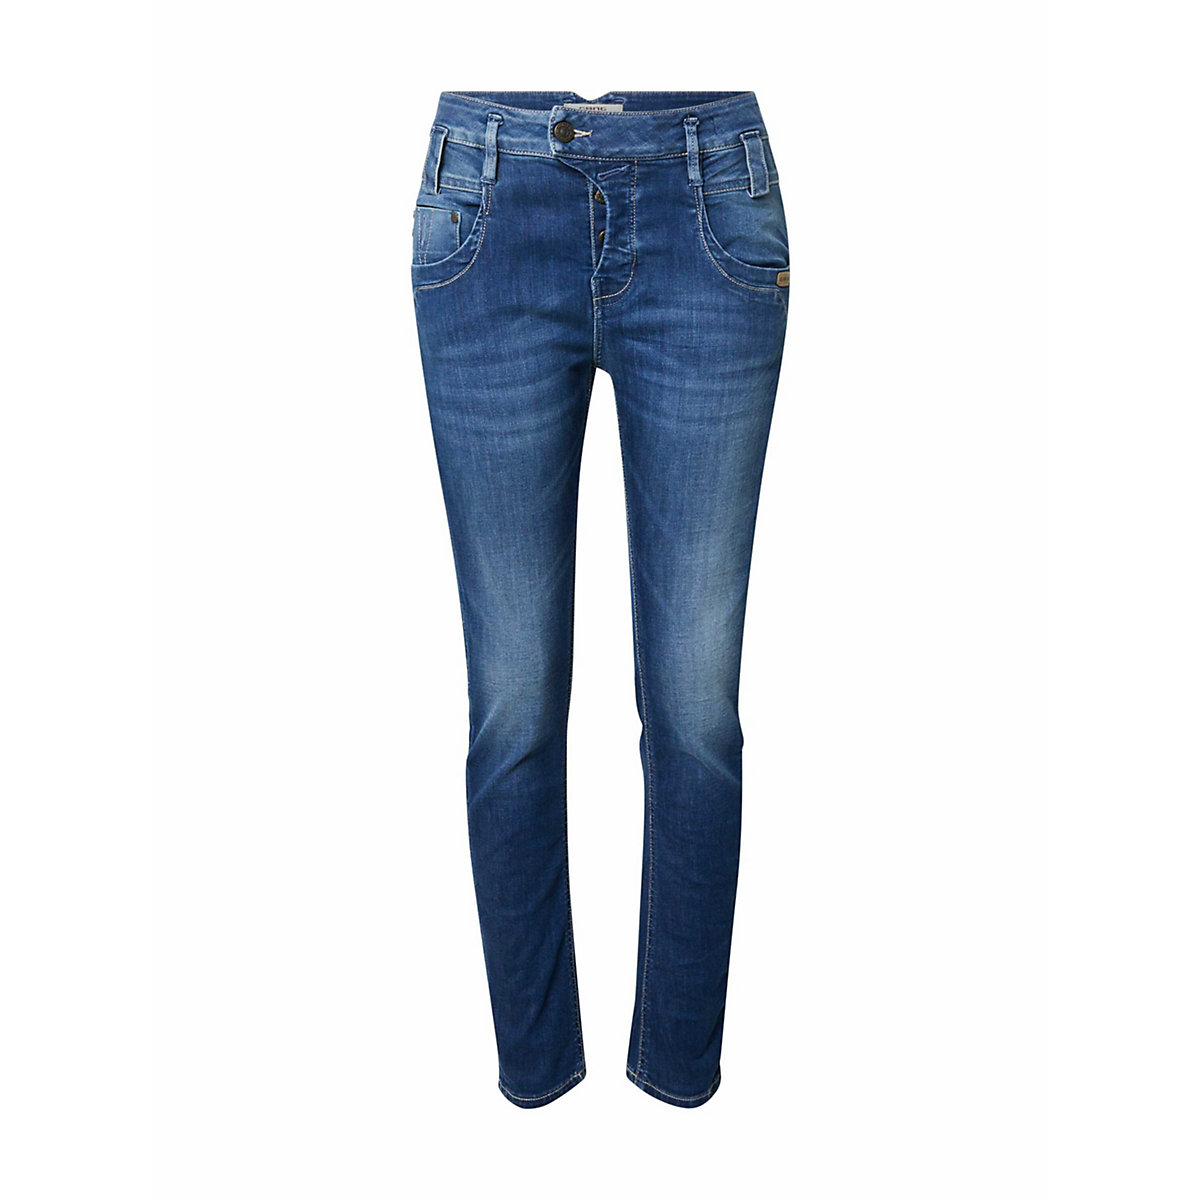 GANG jeans marge Jeanshosen blue denim